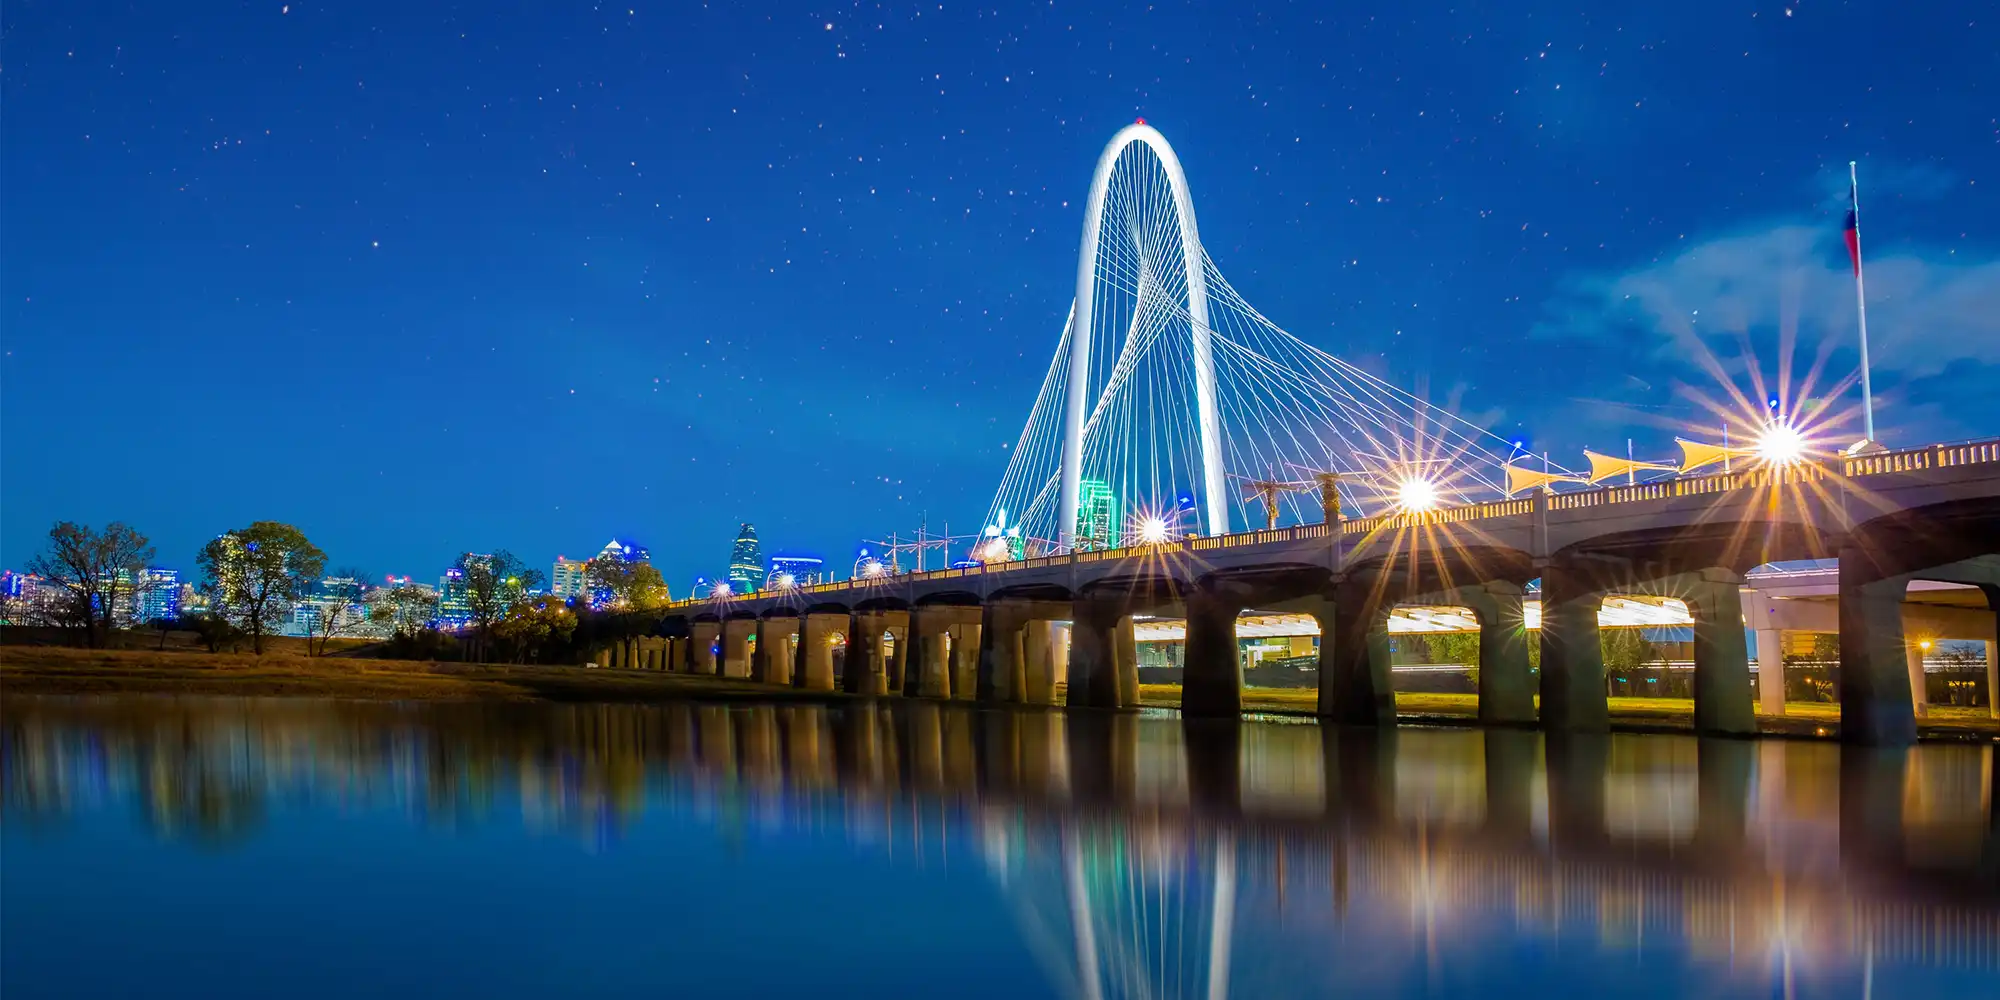 Scenic view of Dallas Fort Worth location